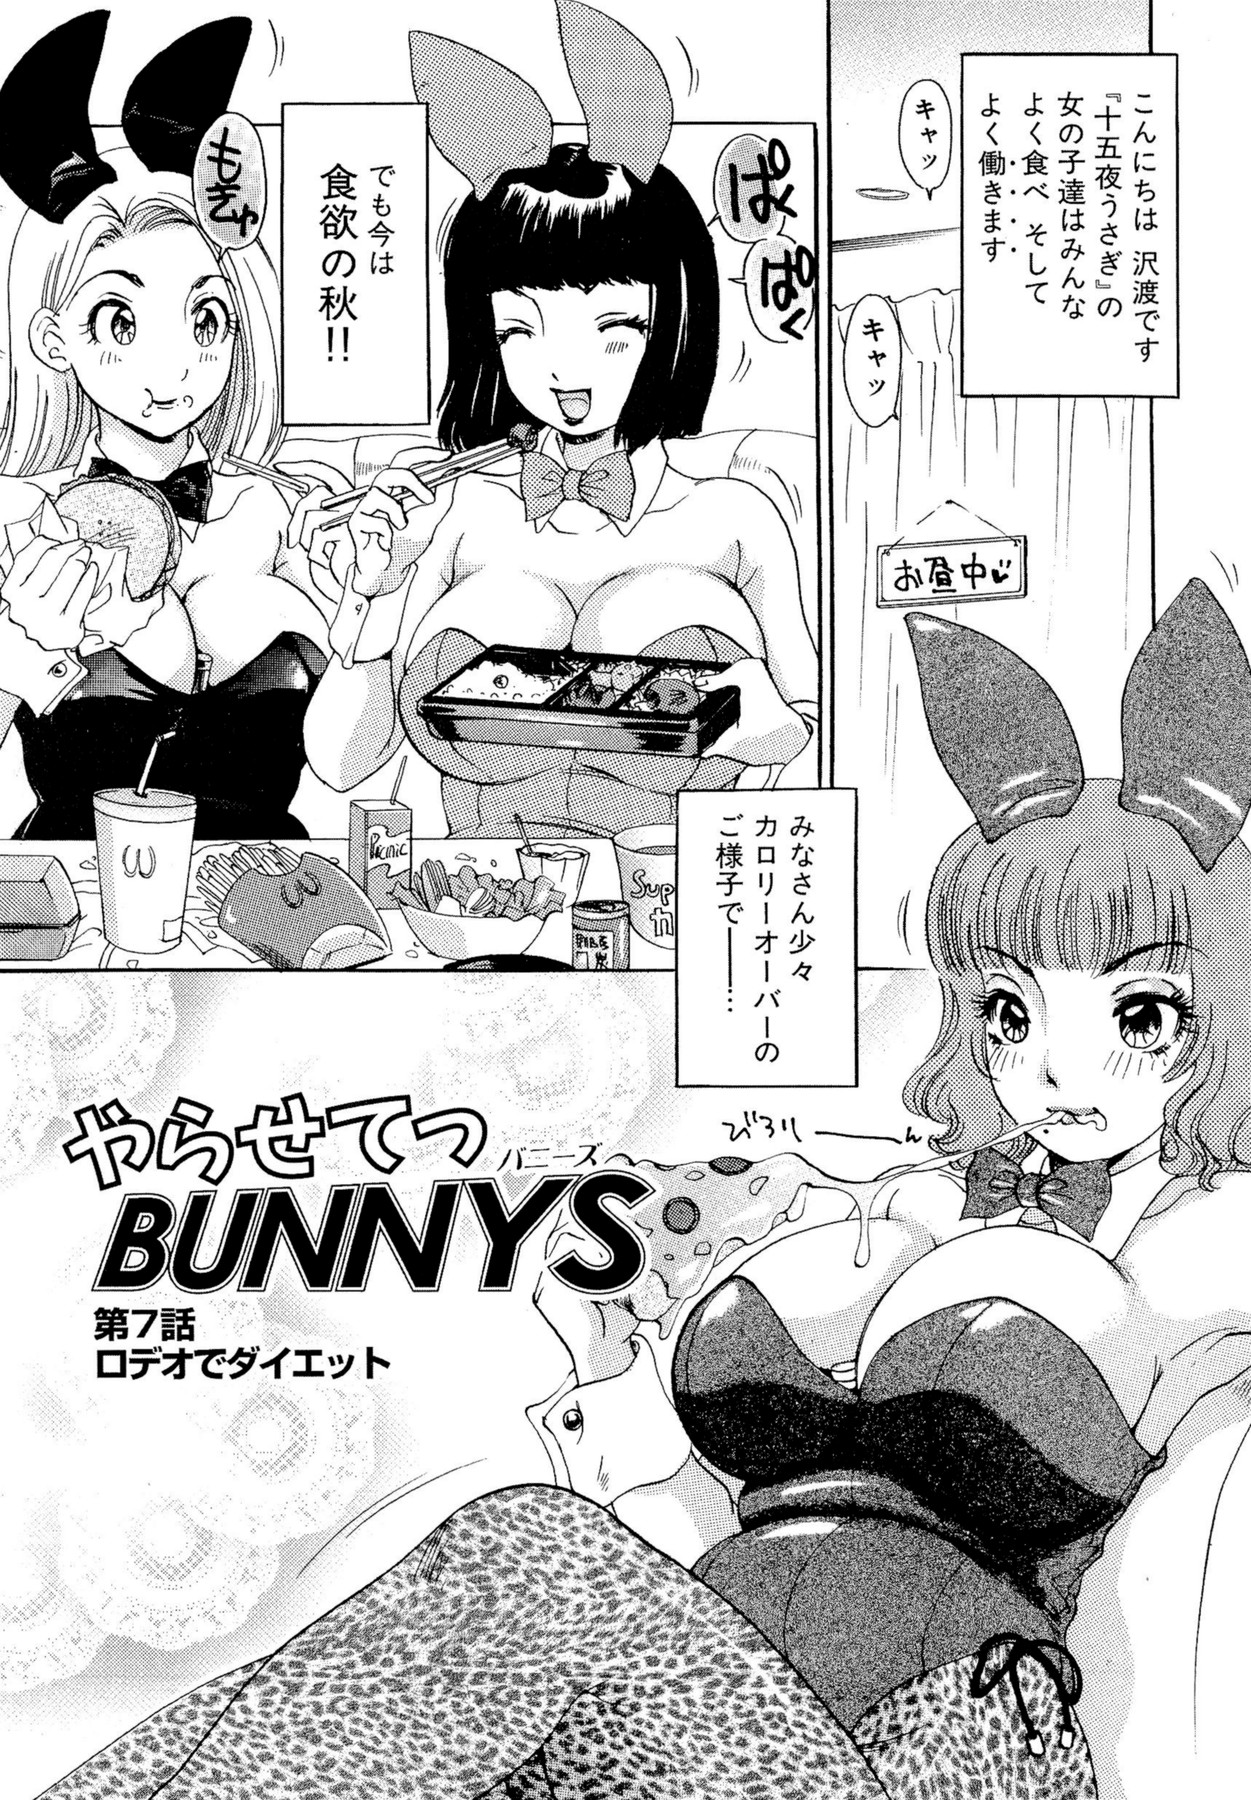 [The Amanoja9] Yarasete Bunnys [The Amanoja9] やらせてっ Bunnys